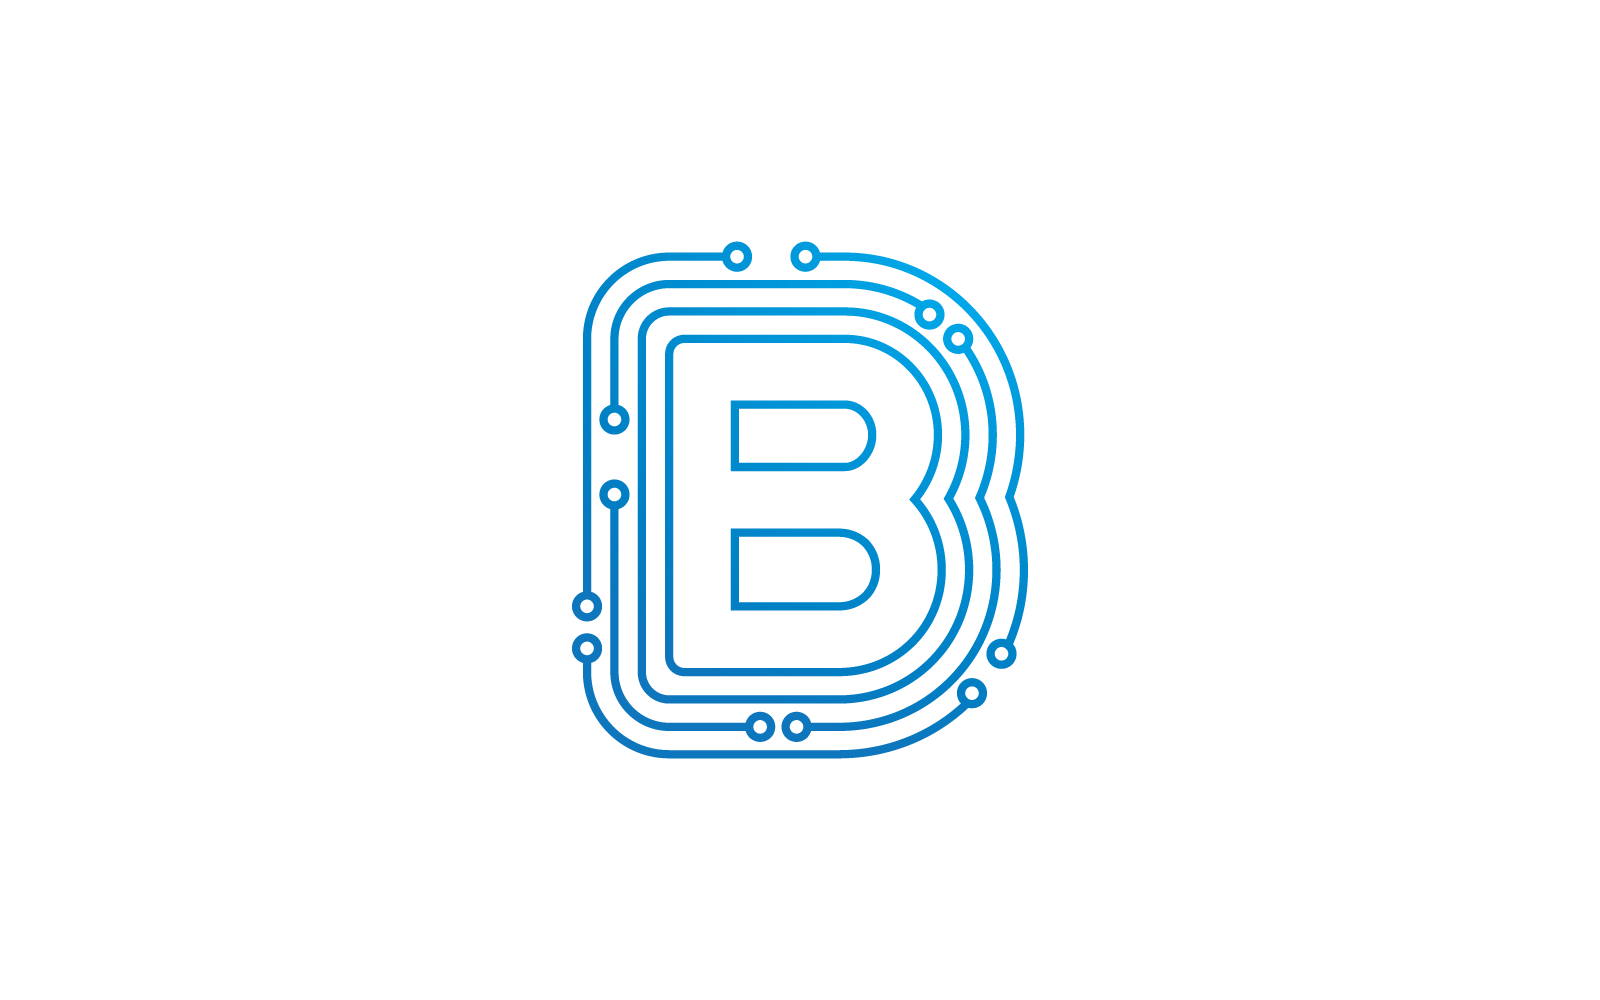 Начальная буква B. Иллюстрация вектора логотипа схемы.